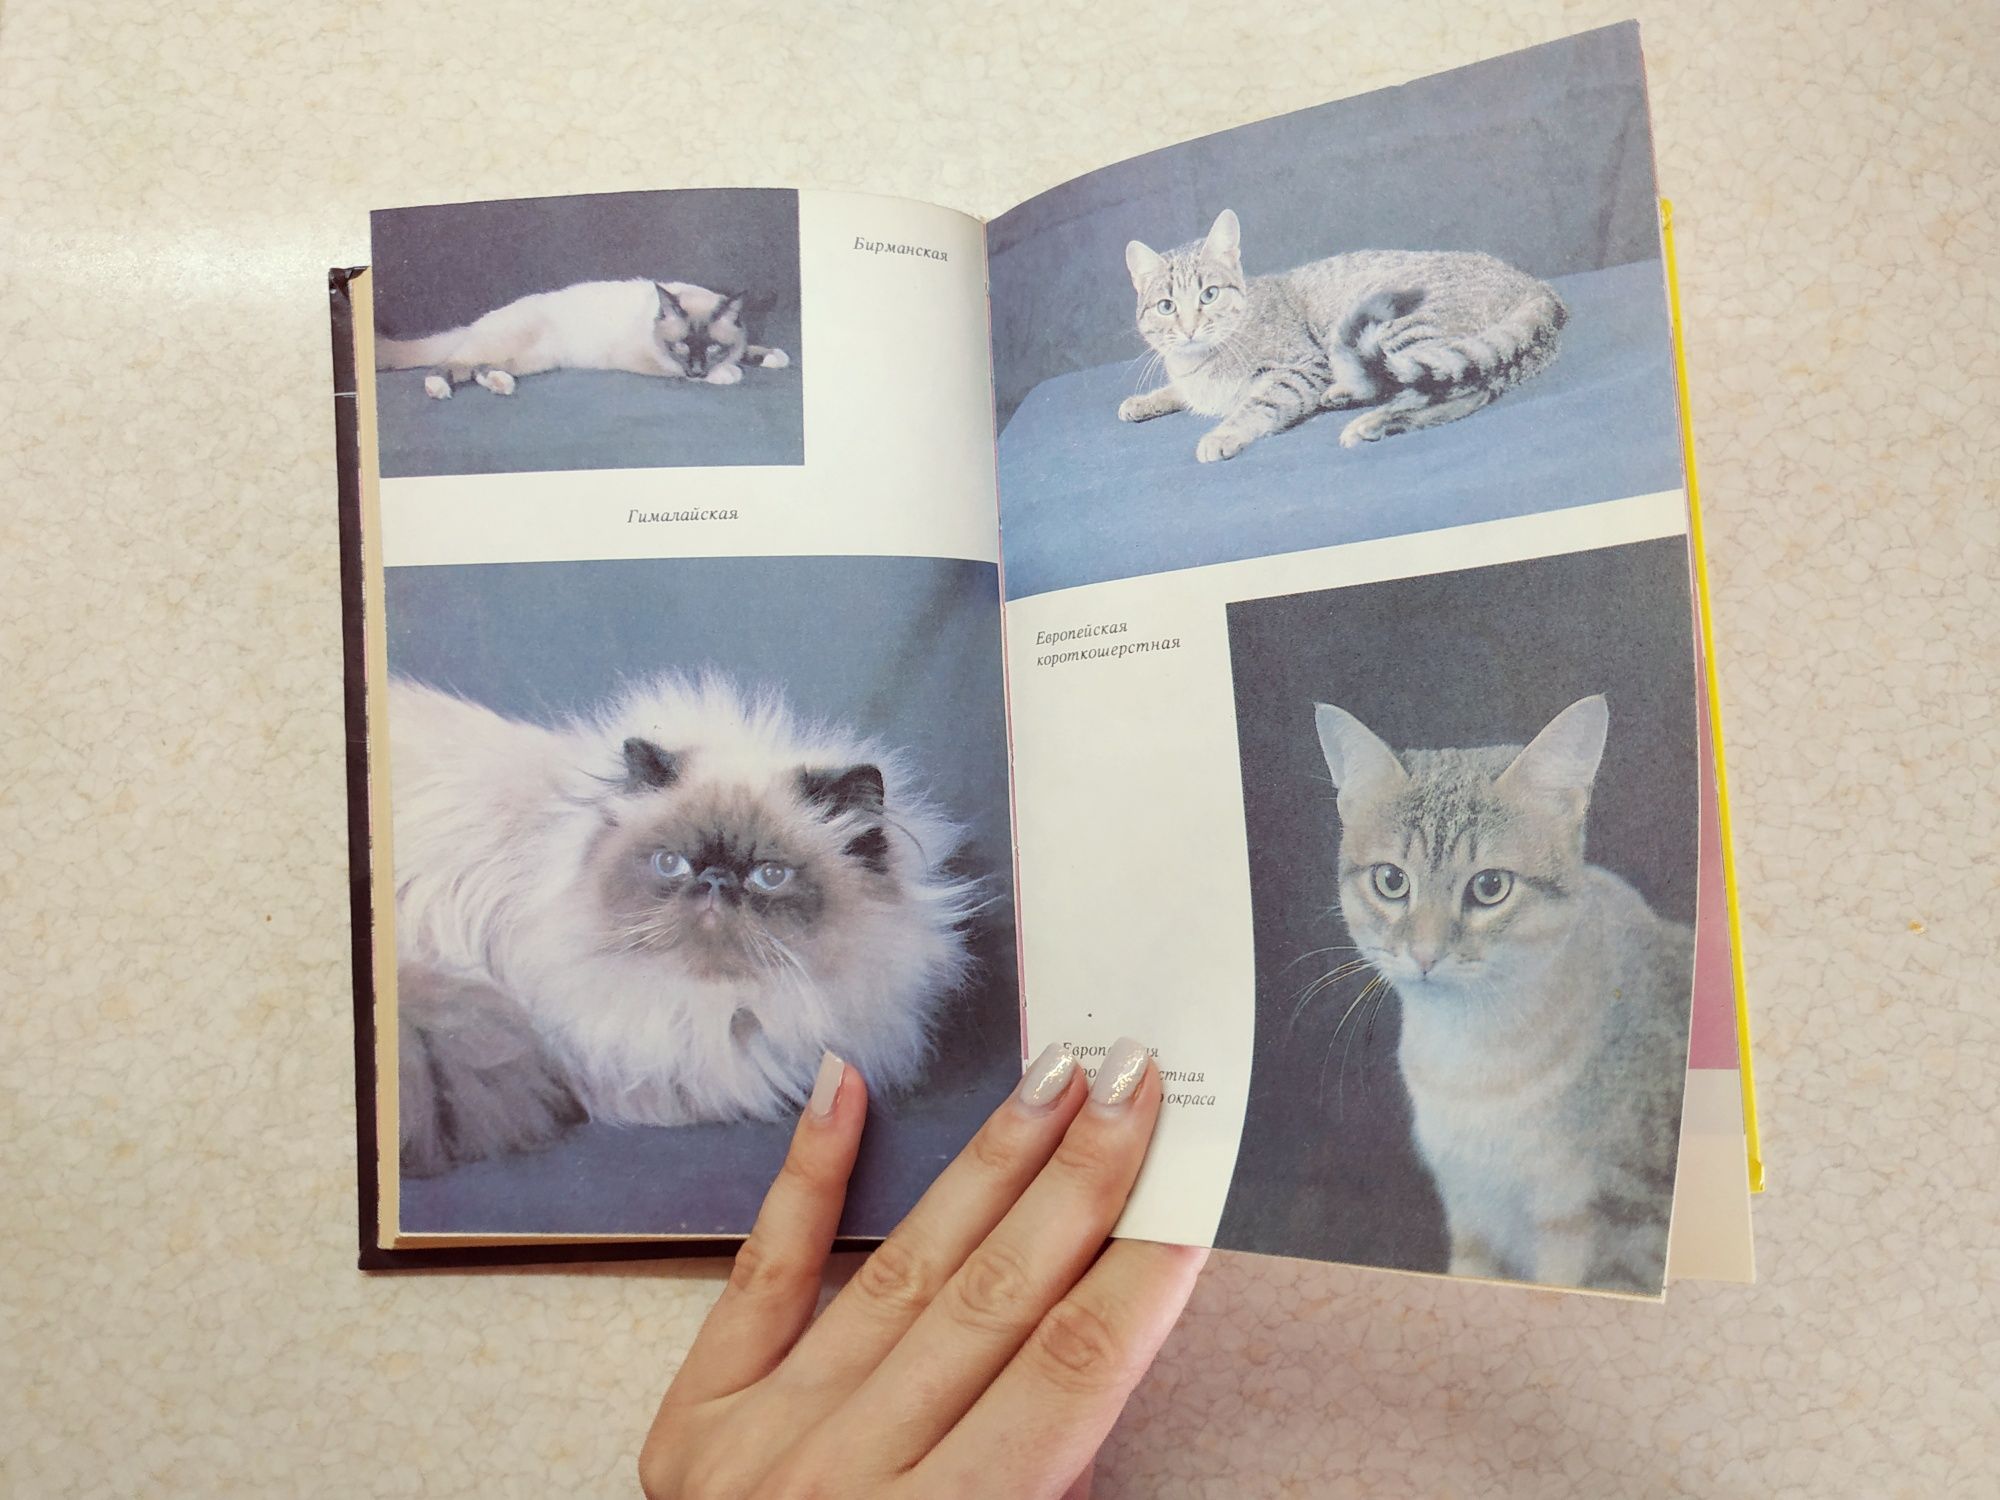 Книга о кошках: "300 кошачьих почему?" Н.Непомнящий